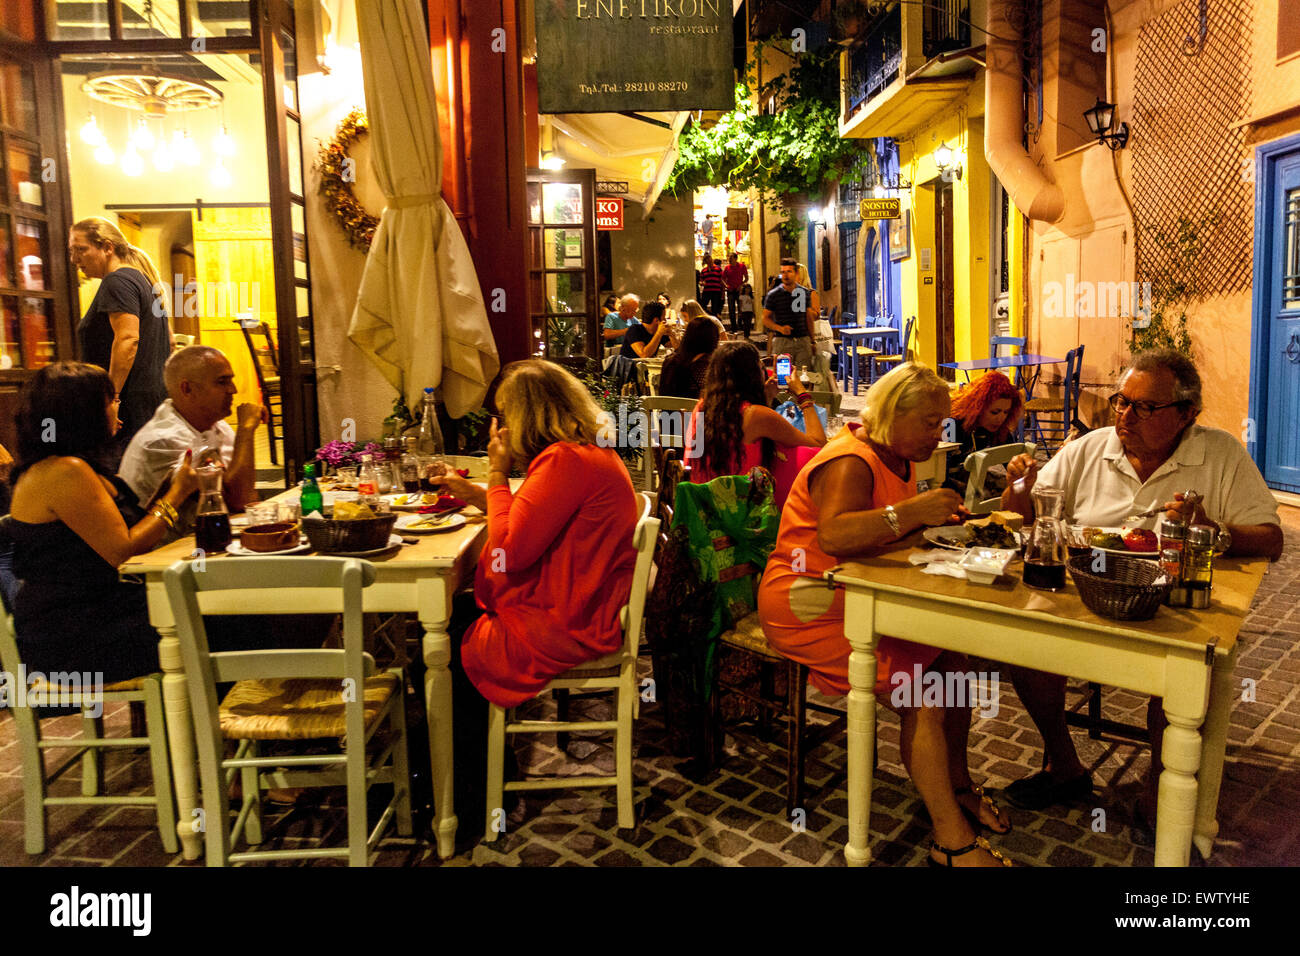 Le vieux port vénitien de la Canée bar Grèce gens rue rues claires, crépuscule, bar taverne Crète Iles grecques Banque D'Images